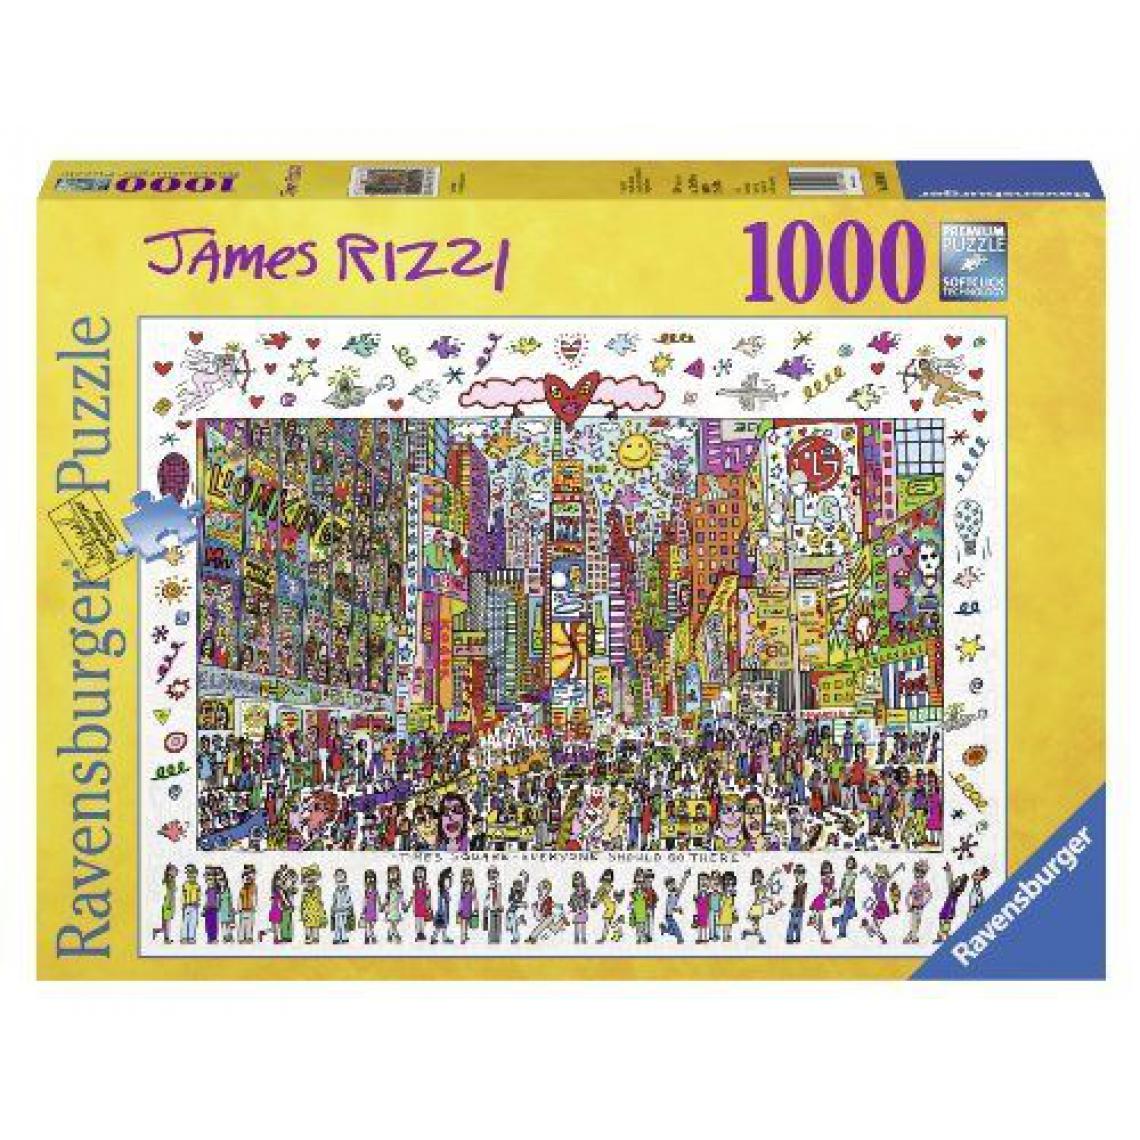 Inconnu - Ravensburger - 19069 - Puzzle Classique - Times Square - James Rizzi - 1000 Pièces - Animaux